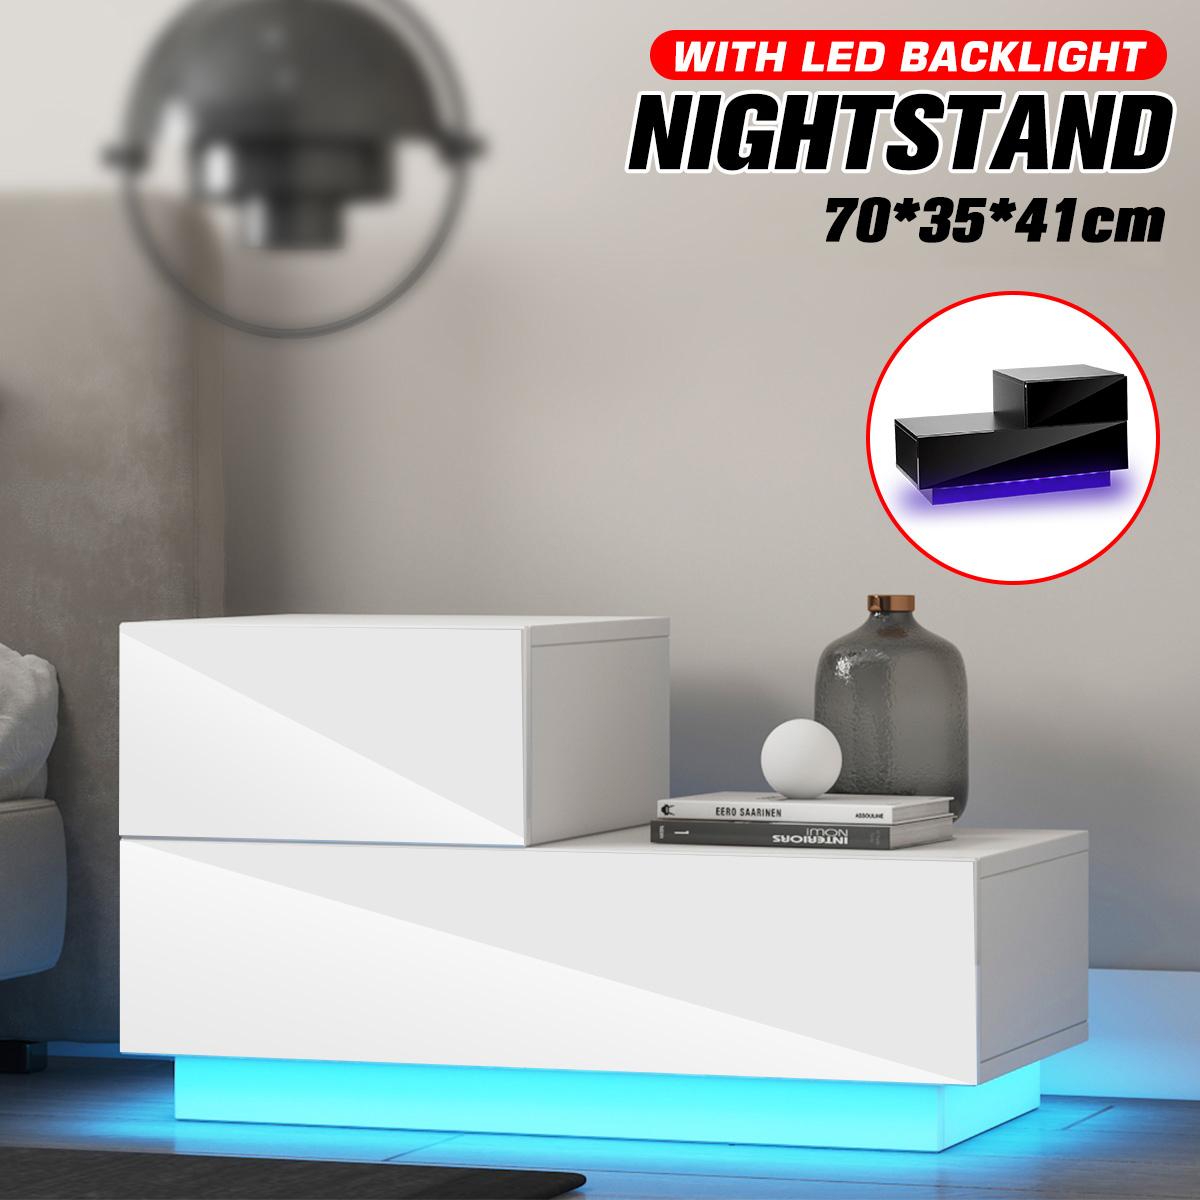 Bedside Cabinet Modern Bedroom Furniture Light Nightstand Cabinet Bedside Nachttisch